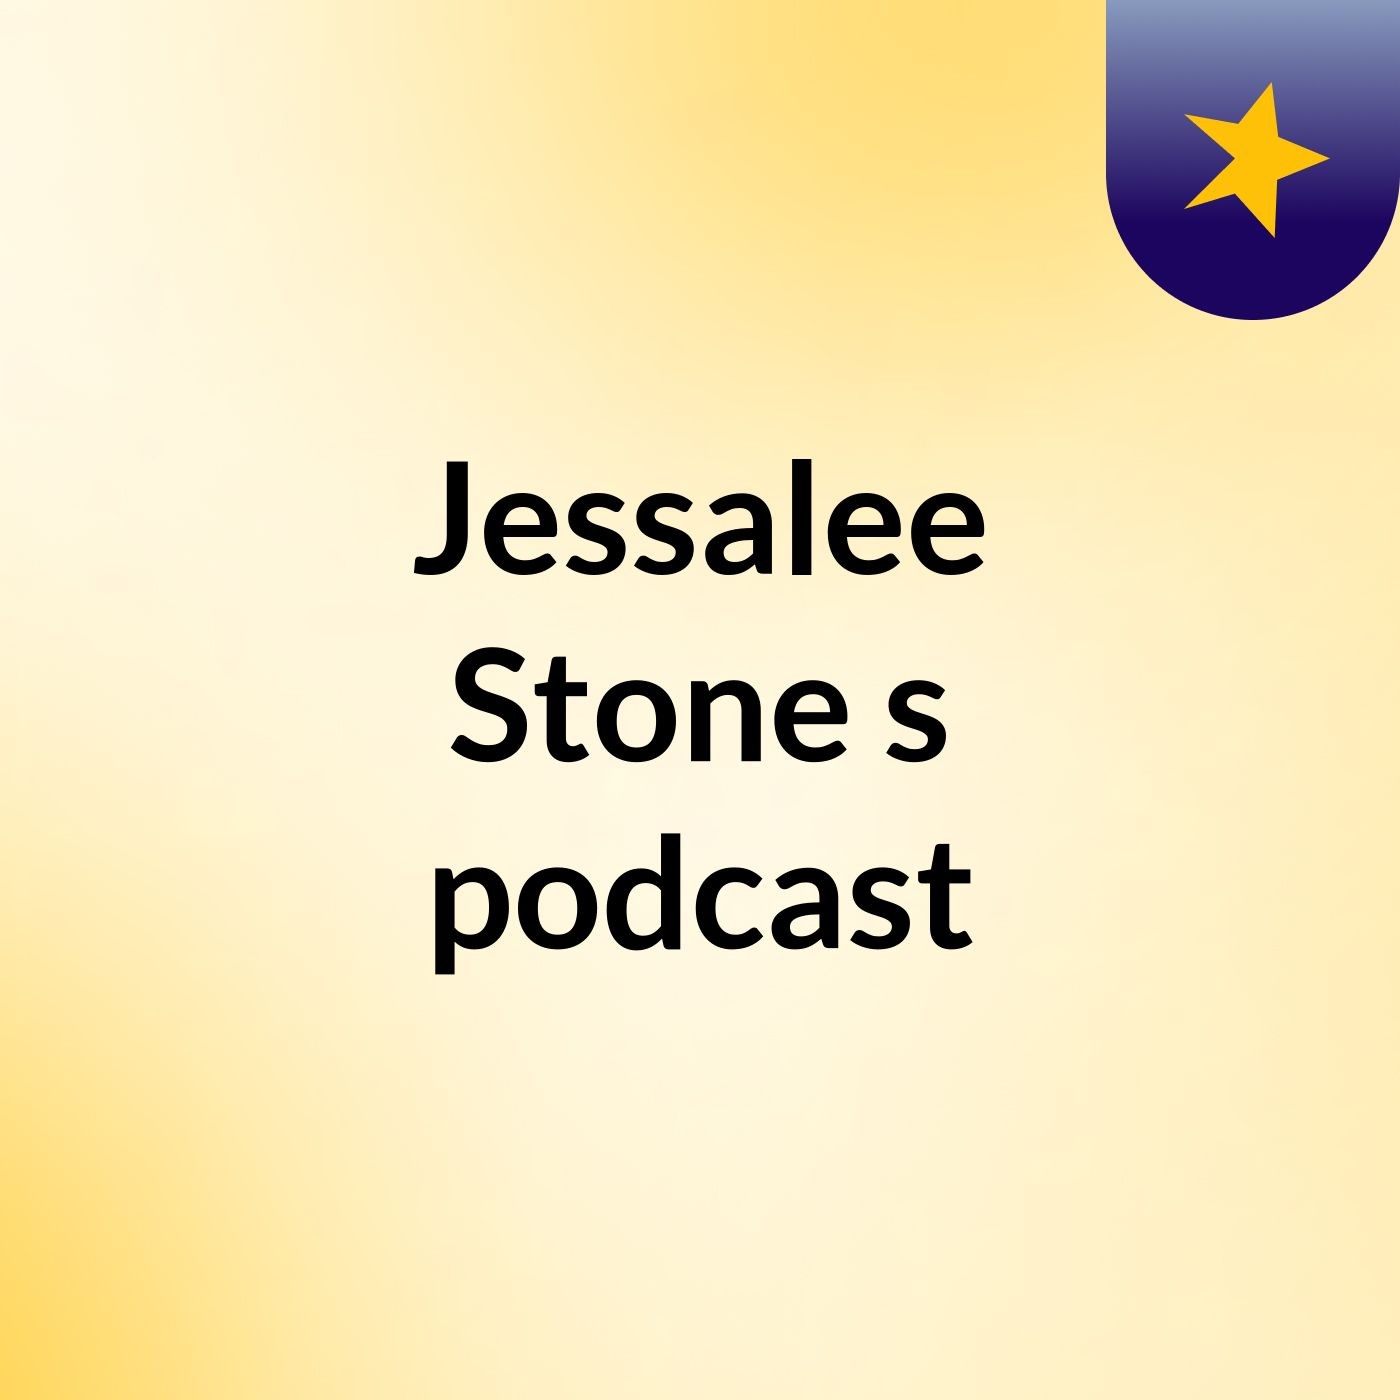 Episode 2 - Jessalee Stone's podcast